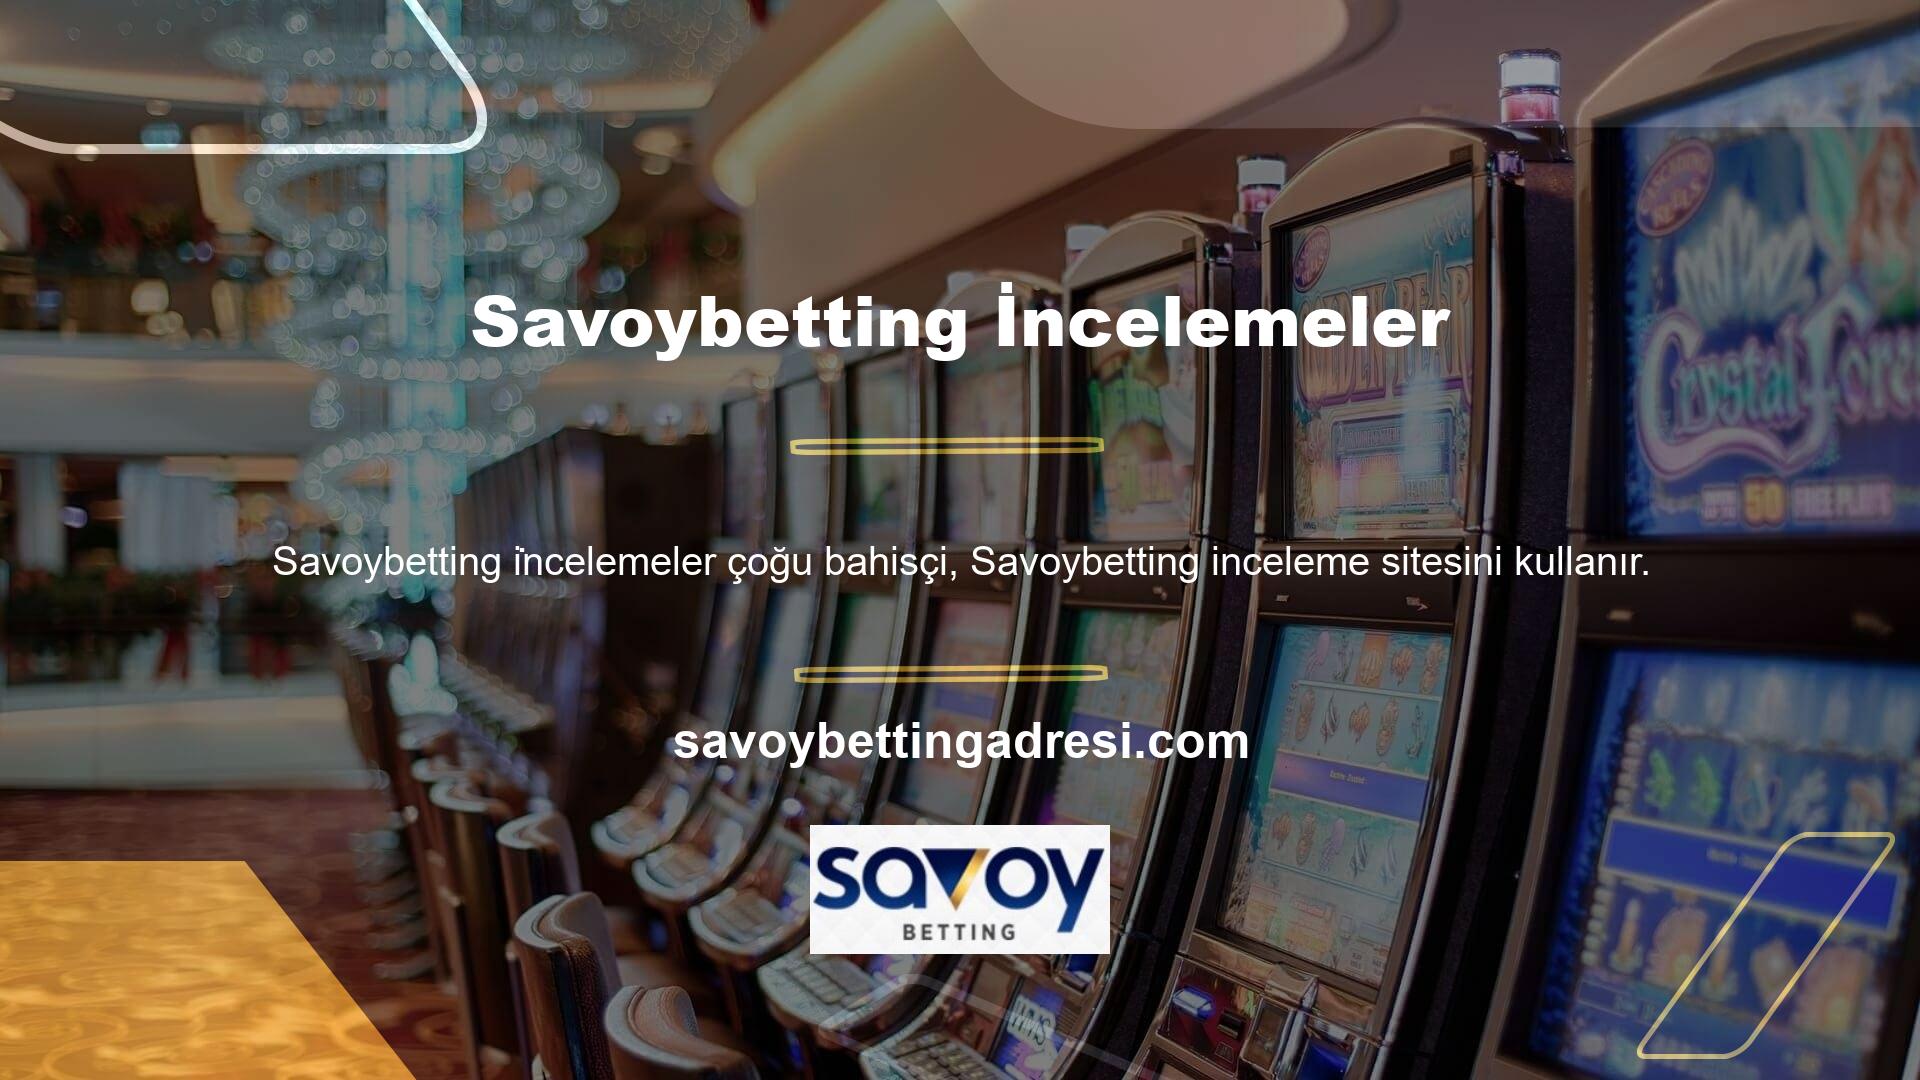 Yurtdışı casino siteleri, oyuncuların daha az yatırımla daha fazla para kazanmasına yardımcı olan canlı casino fırsatları sunar